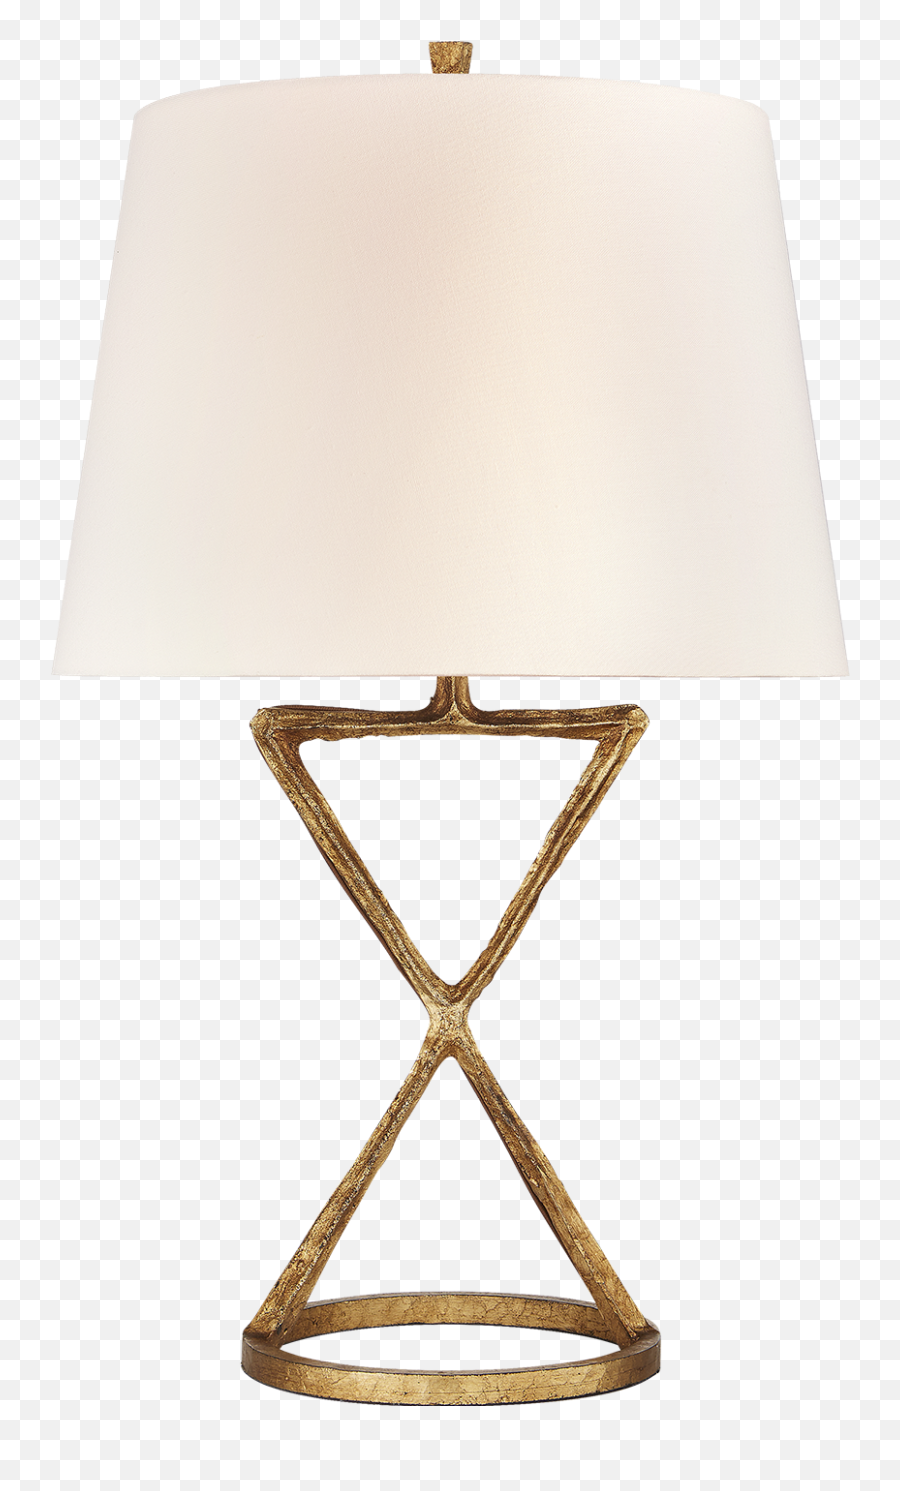 The Most Edited Dekorasi Picsart - Desk Lamp Emoji,Break A Lamp Emoji